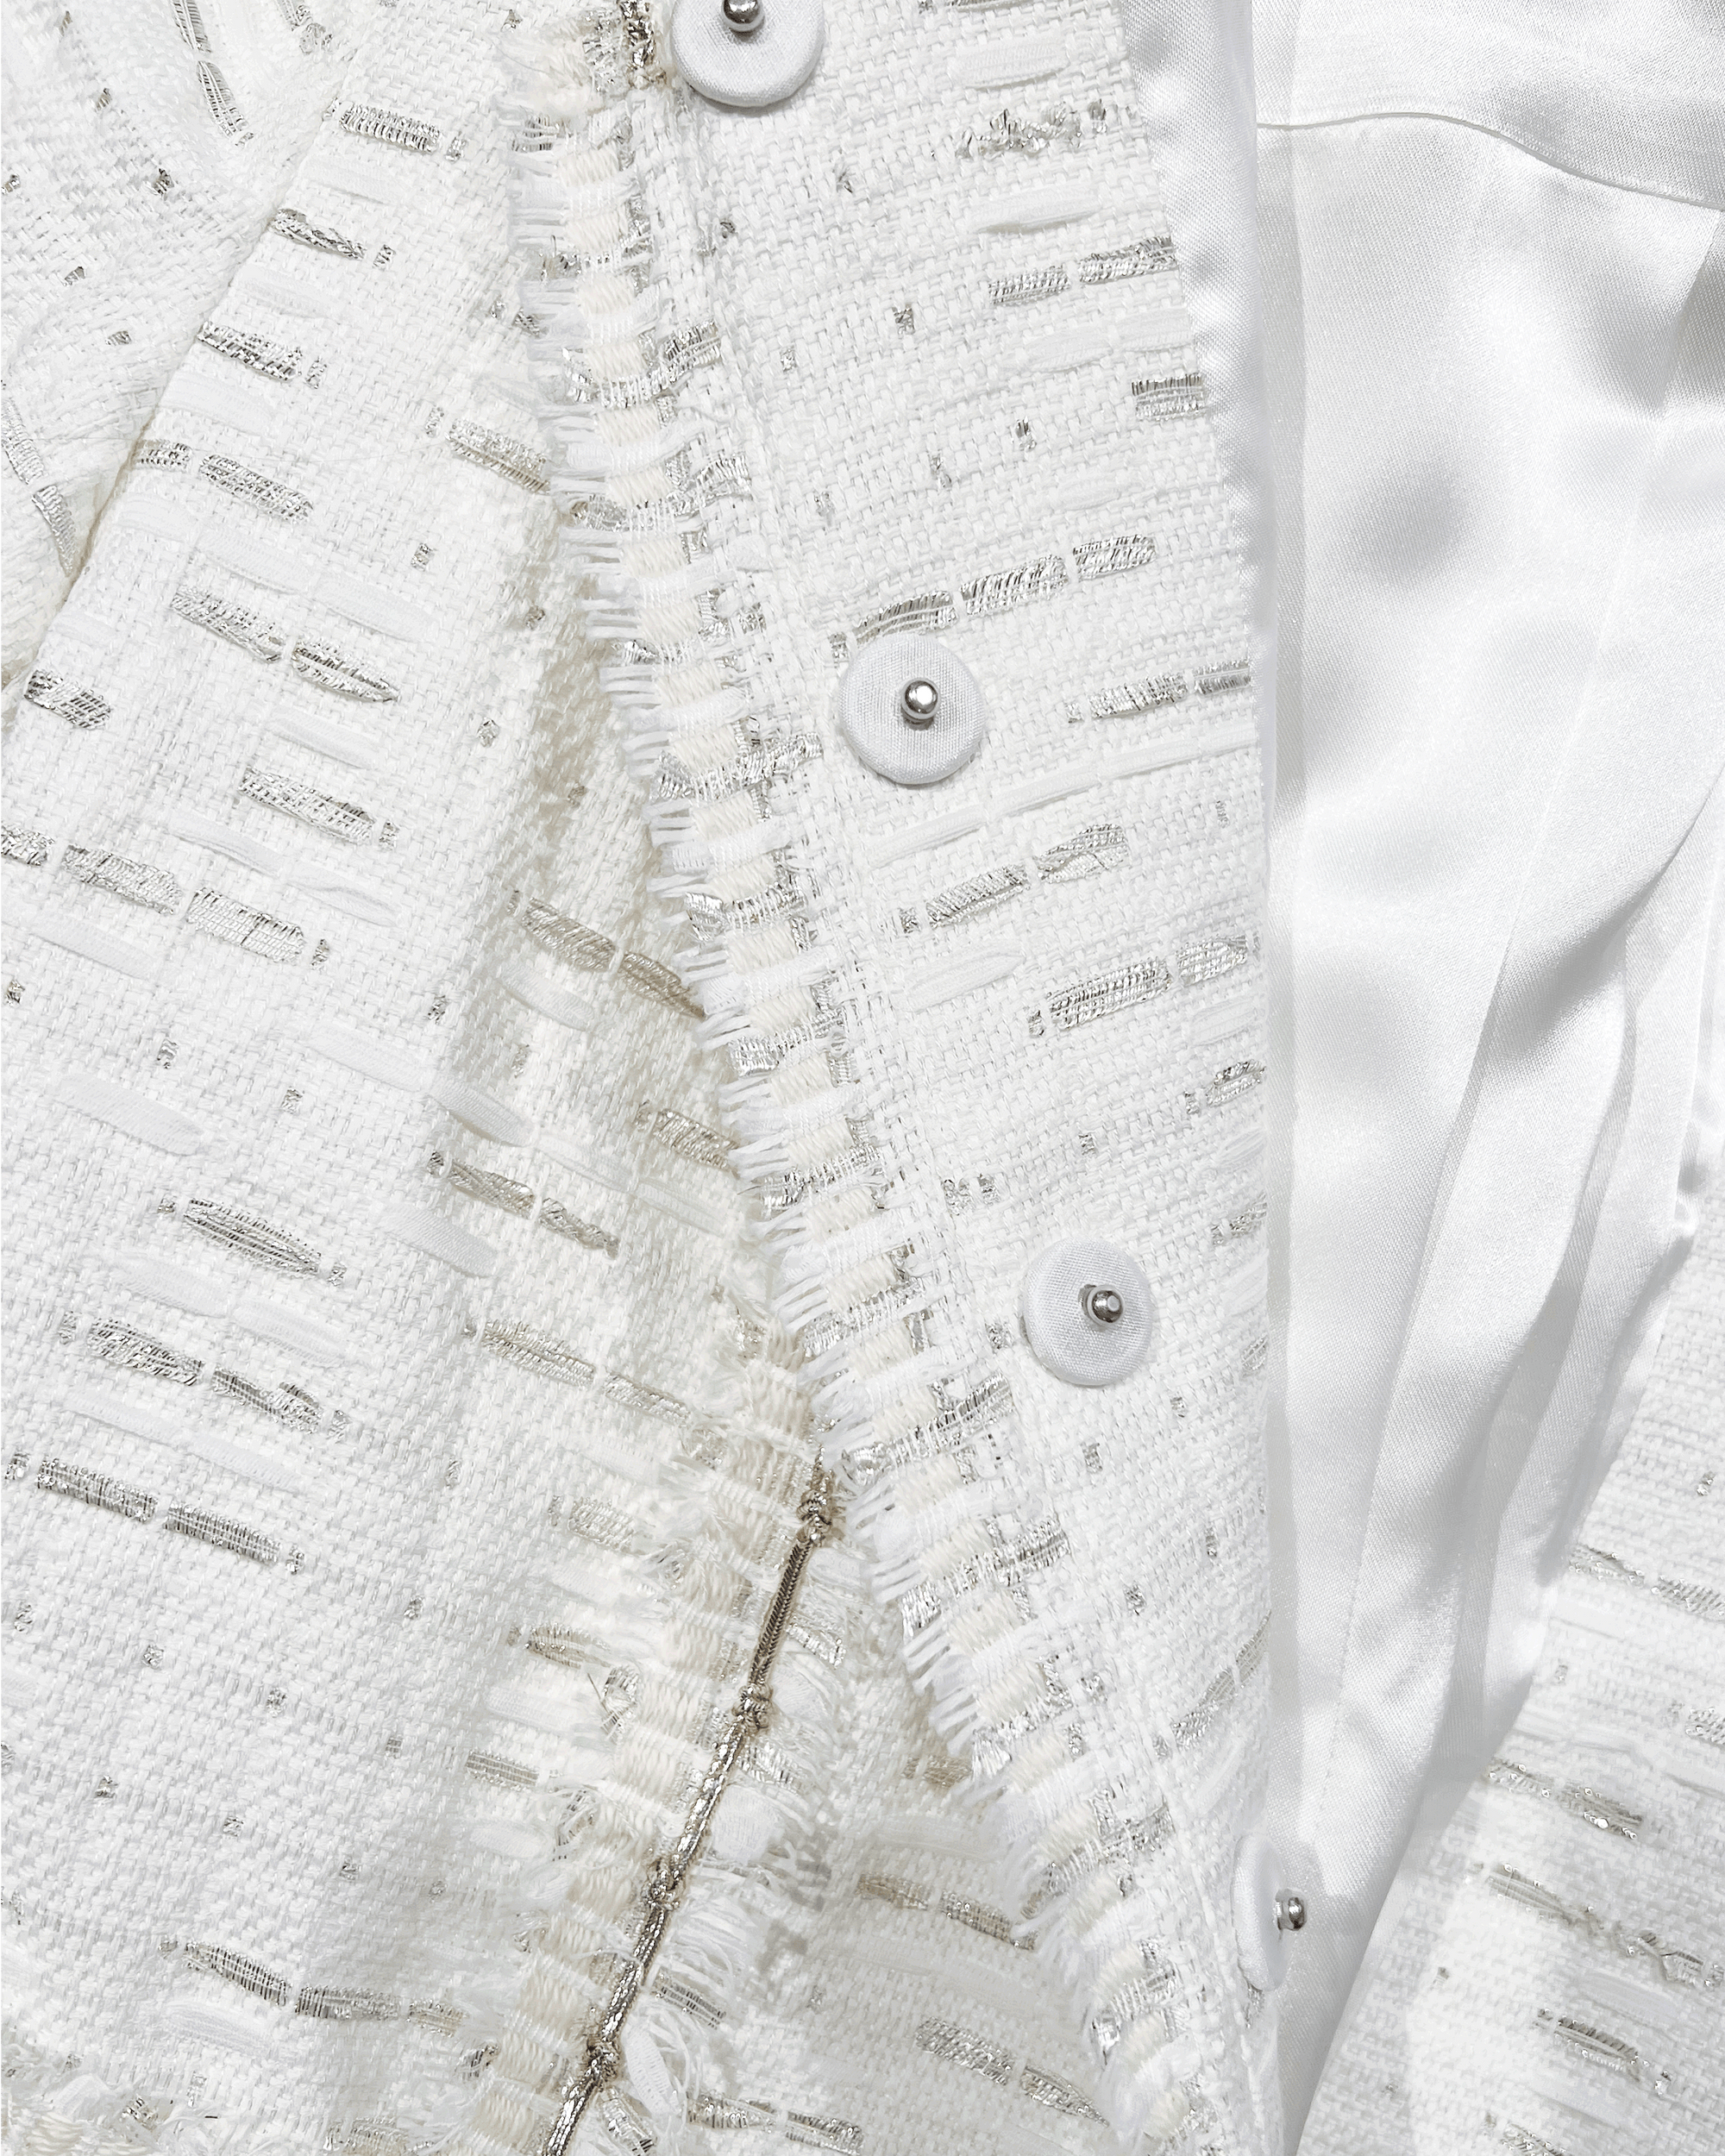 White fringed tweed jacket